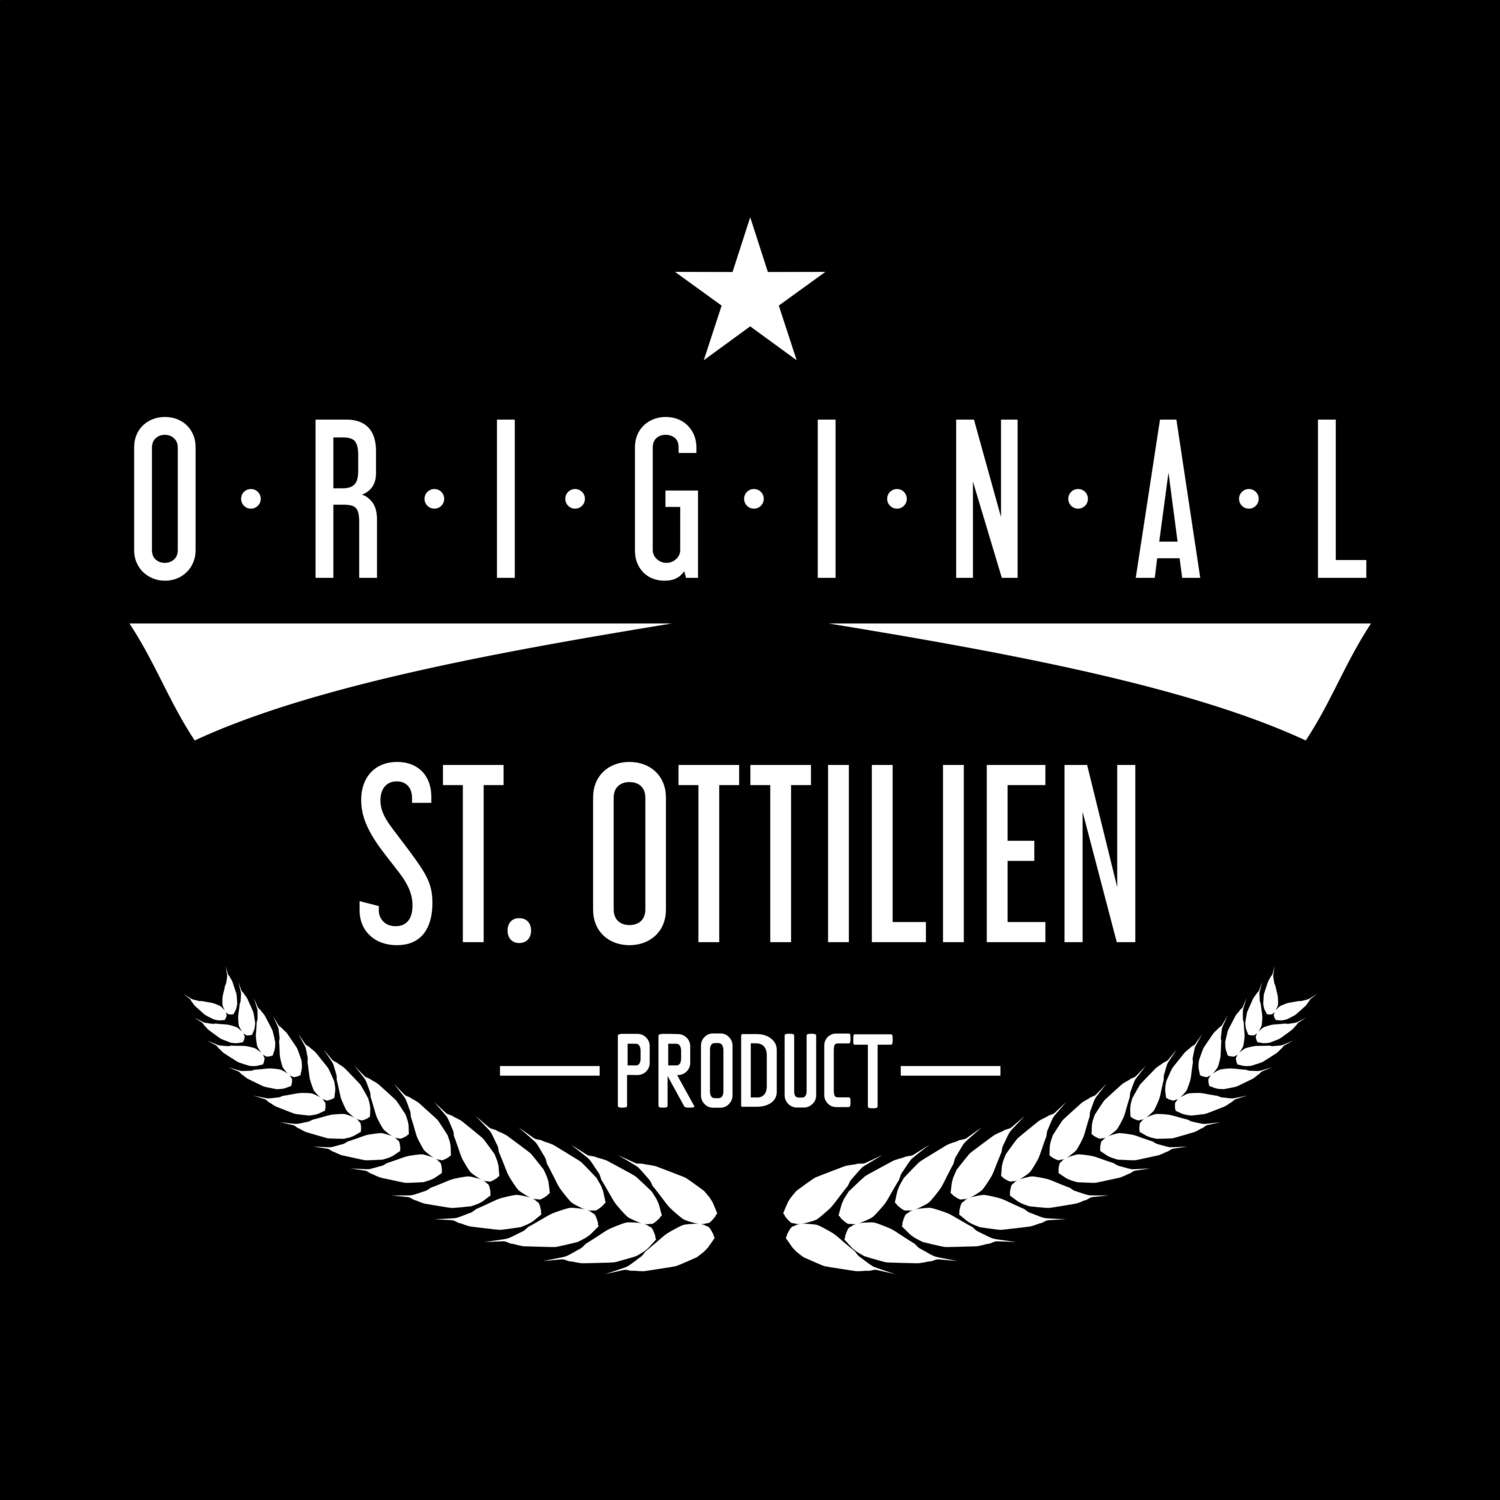 St. Ottilien T-Shirt »Original Product«